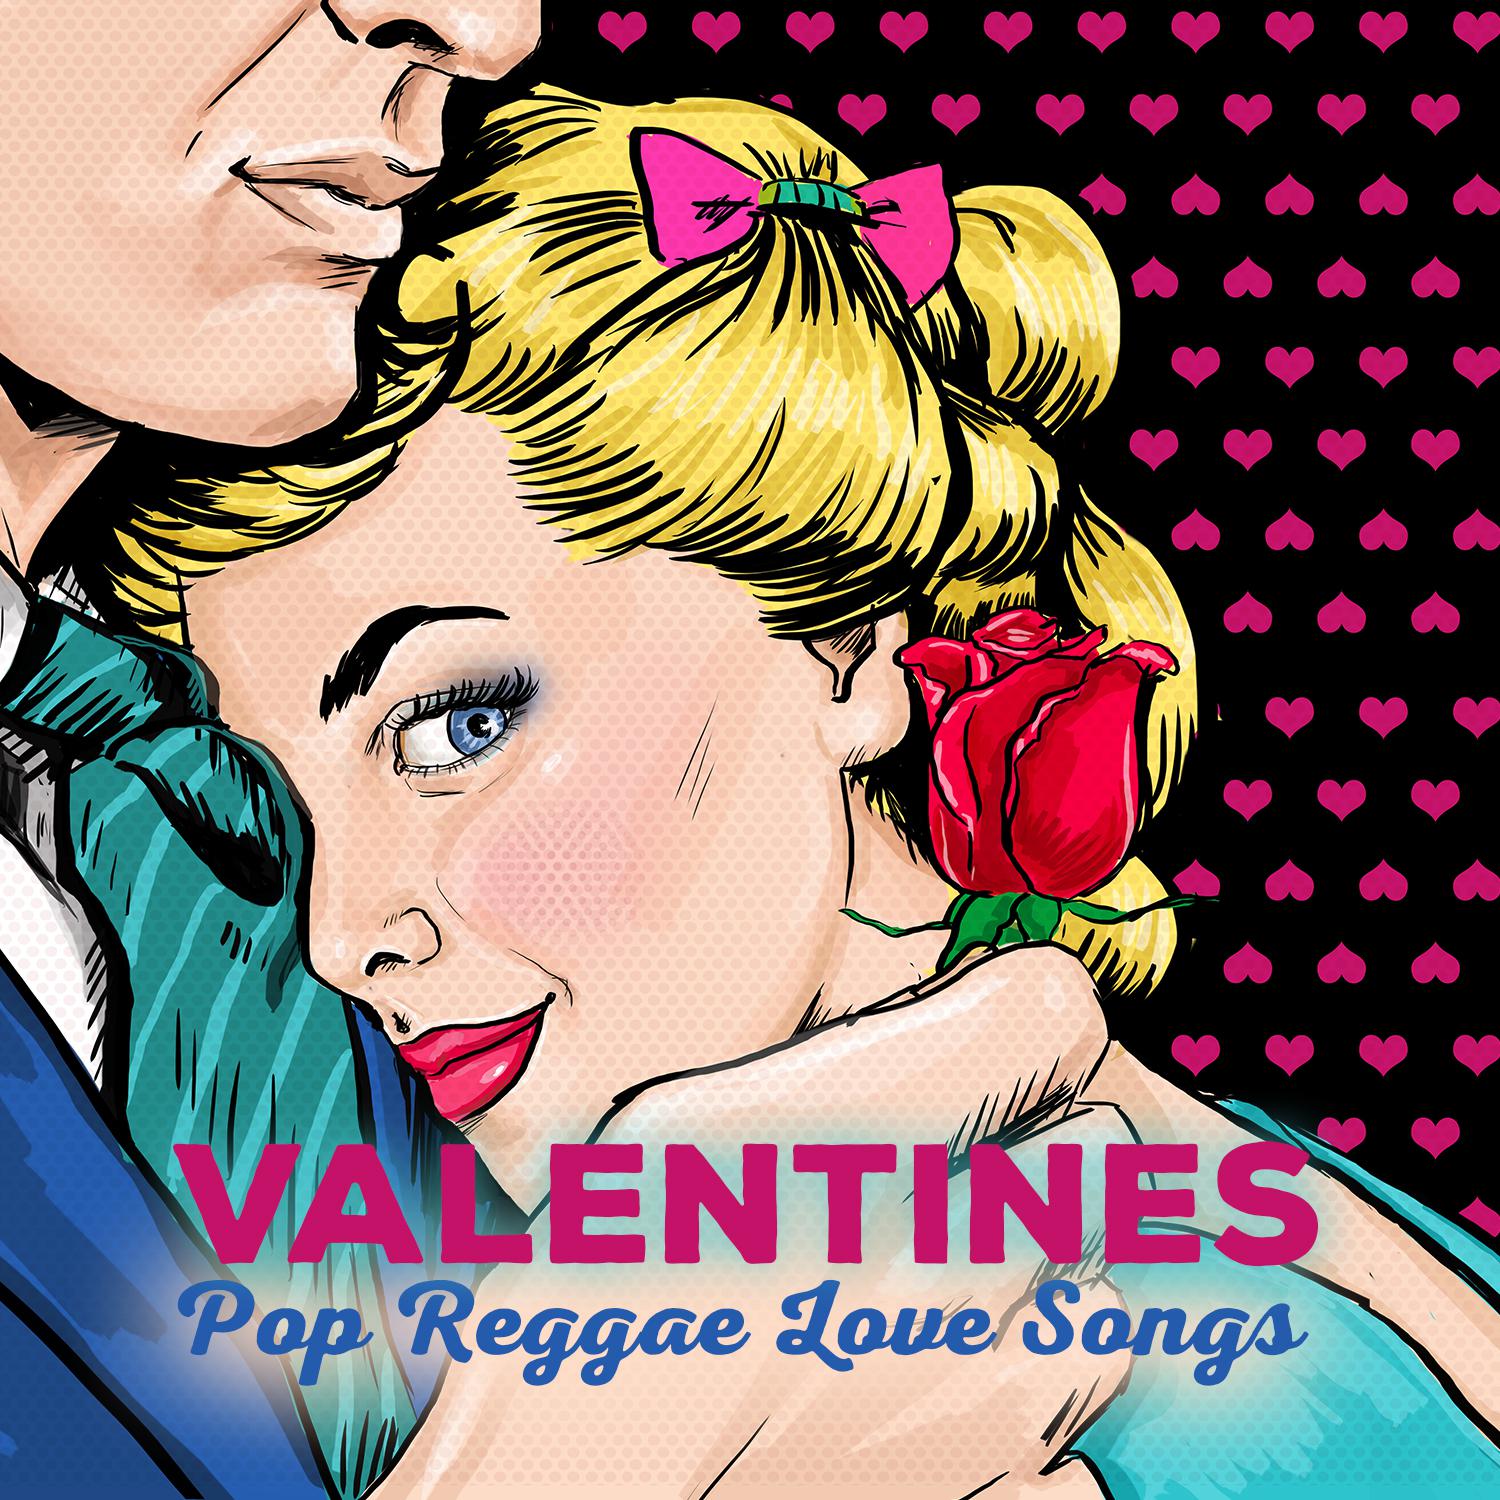 Valentines Pop Reggae Love Songs